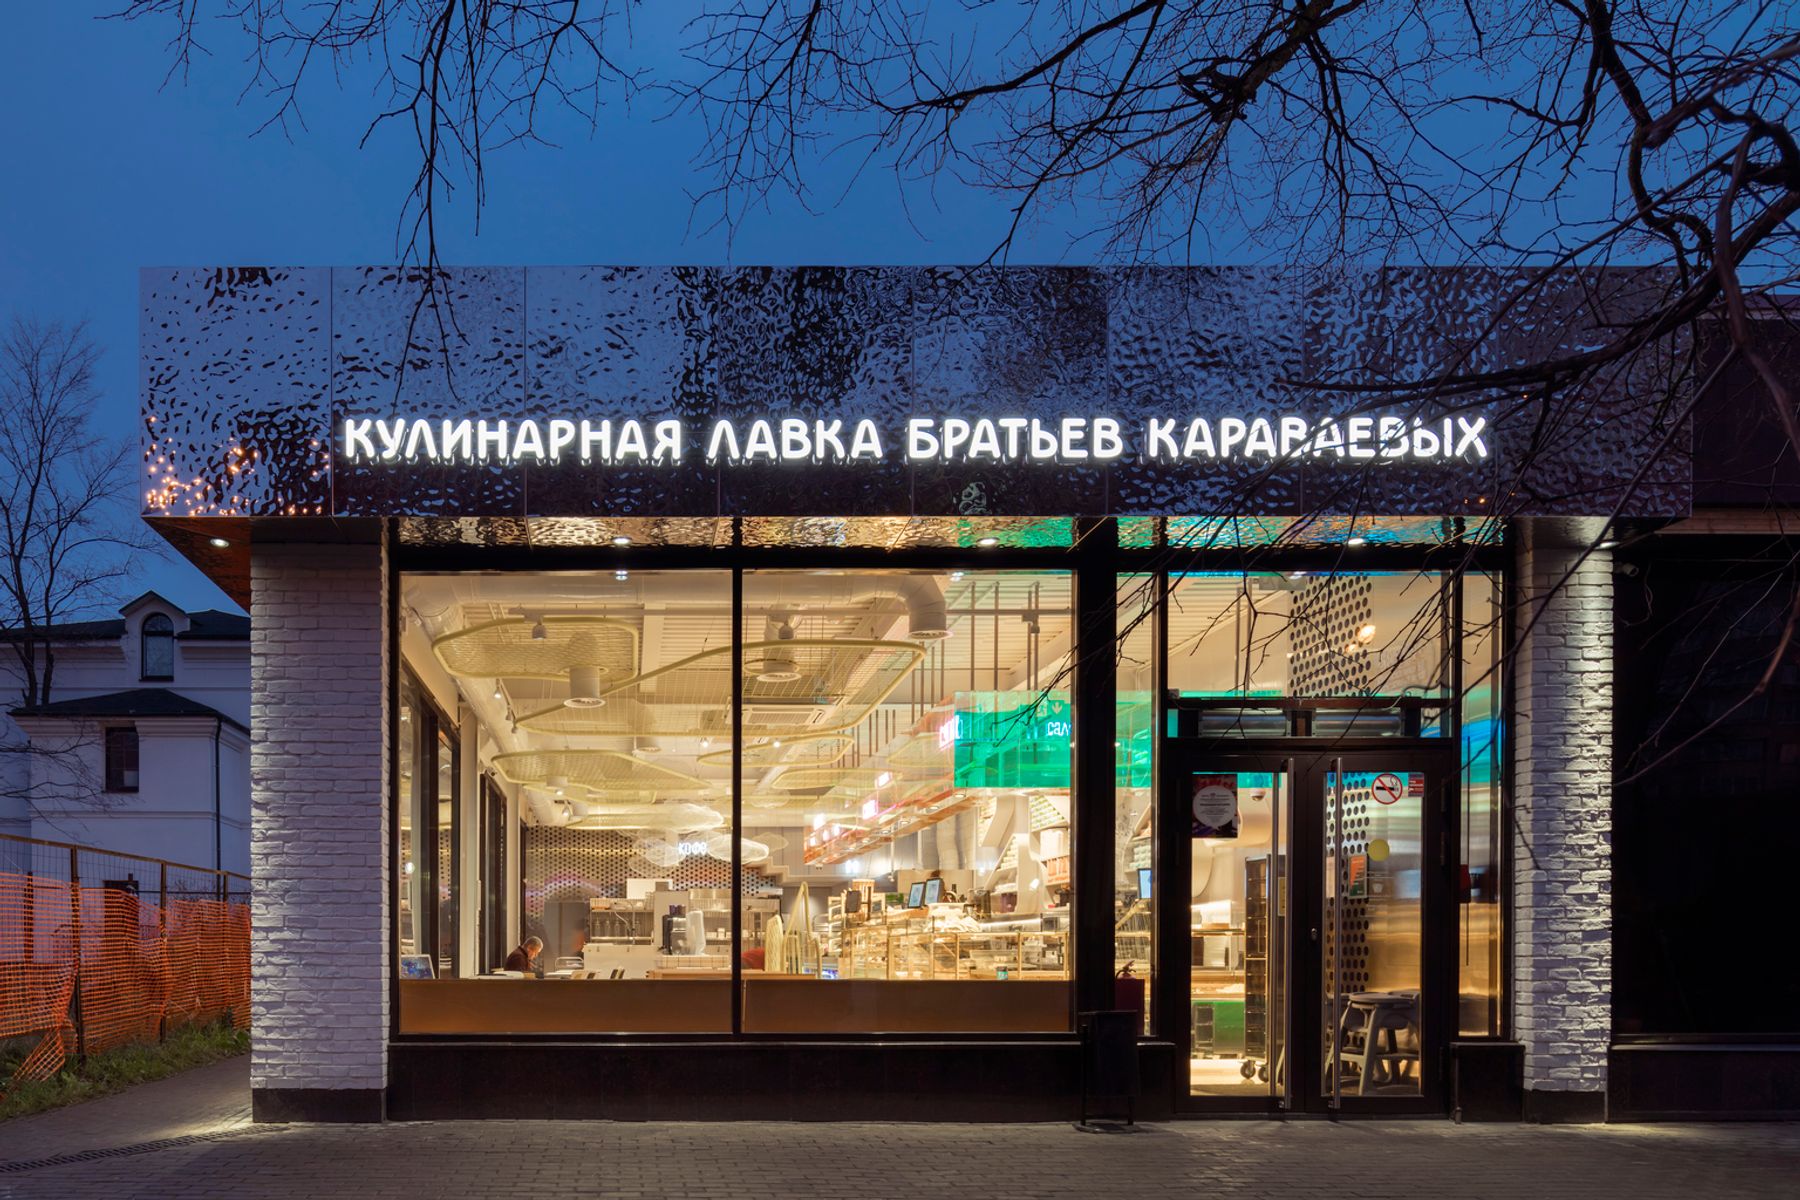 Karavaevi Brothers Cafe – Krzhizhanovskogo, Mosca. Architettura e progettazione illuminotecnica.  V12 Architects / Vvgeniy Shchetinkin, Lleeza Semionova, Mosca. Fotografia: D. Chebanenko.